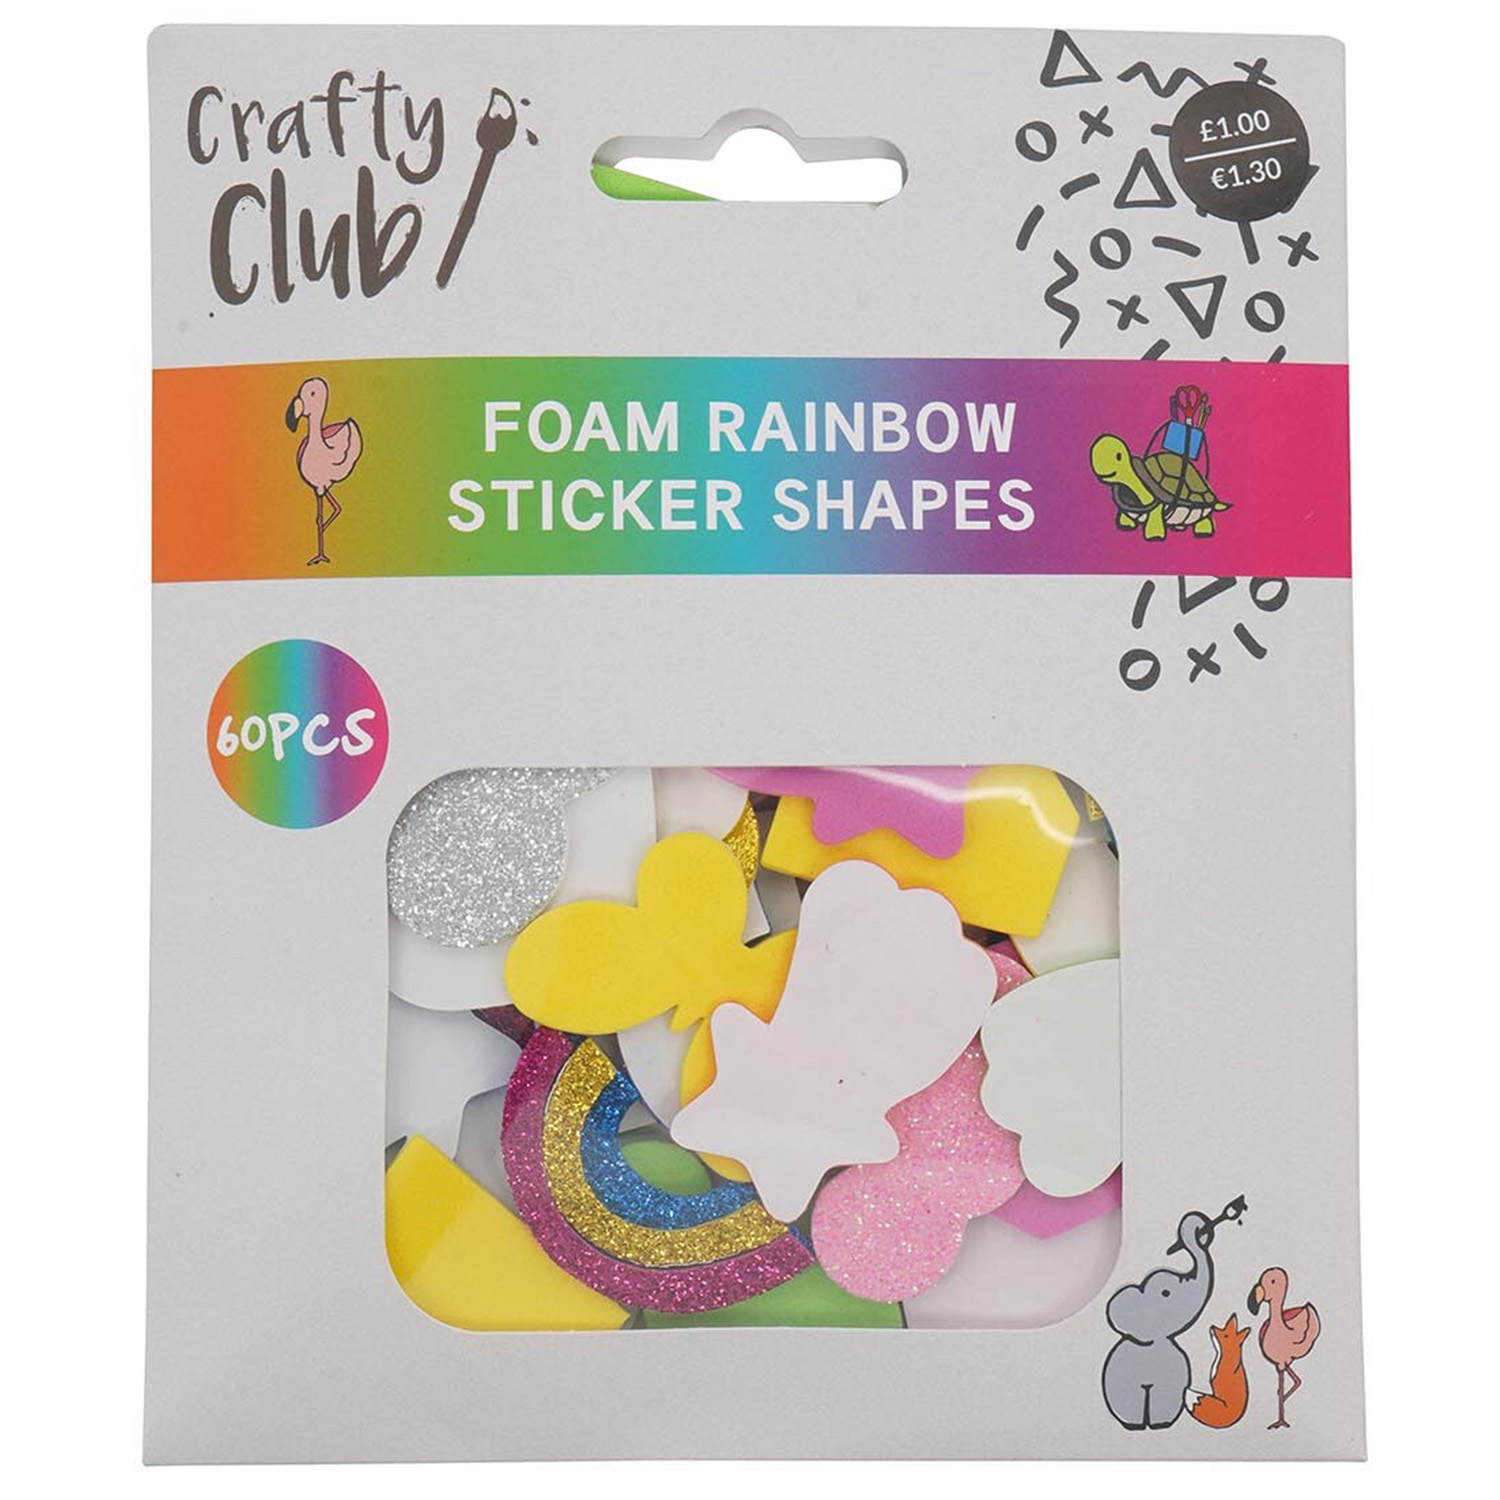 Crafty Club Foam Rainbow Sticker Shapes Image 1